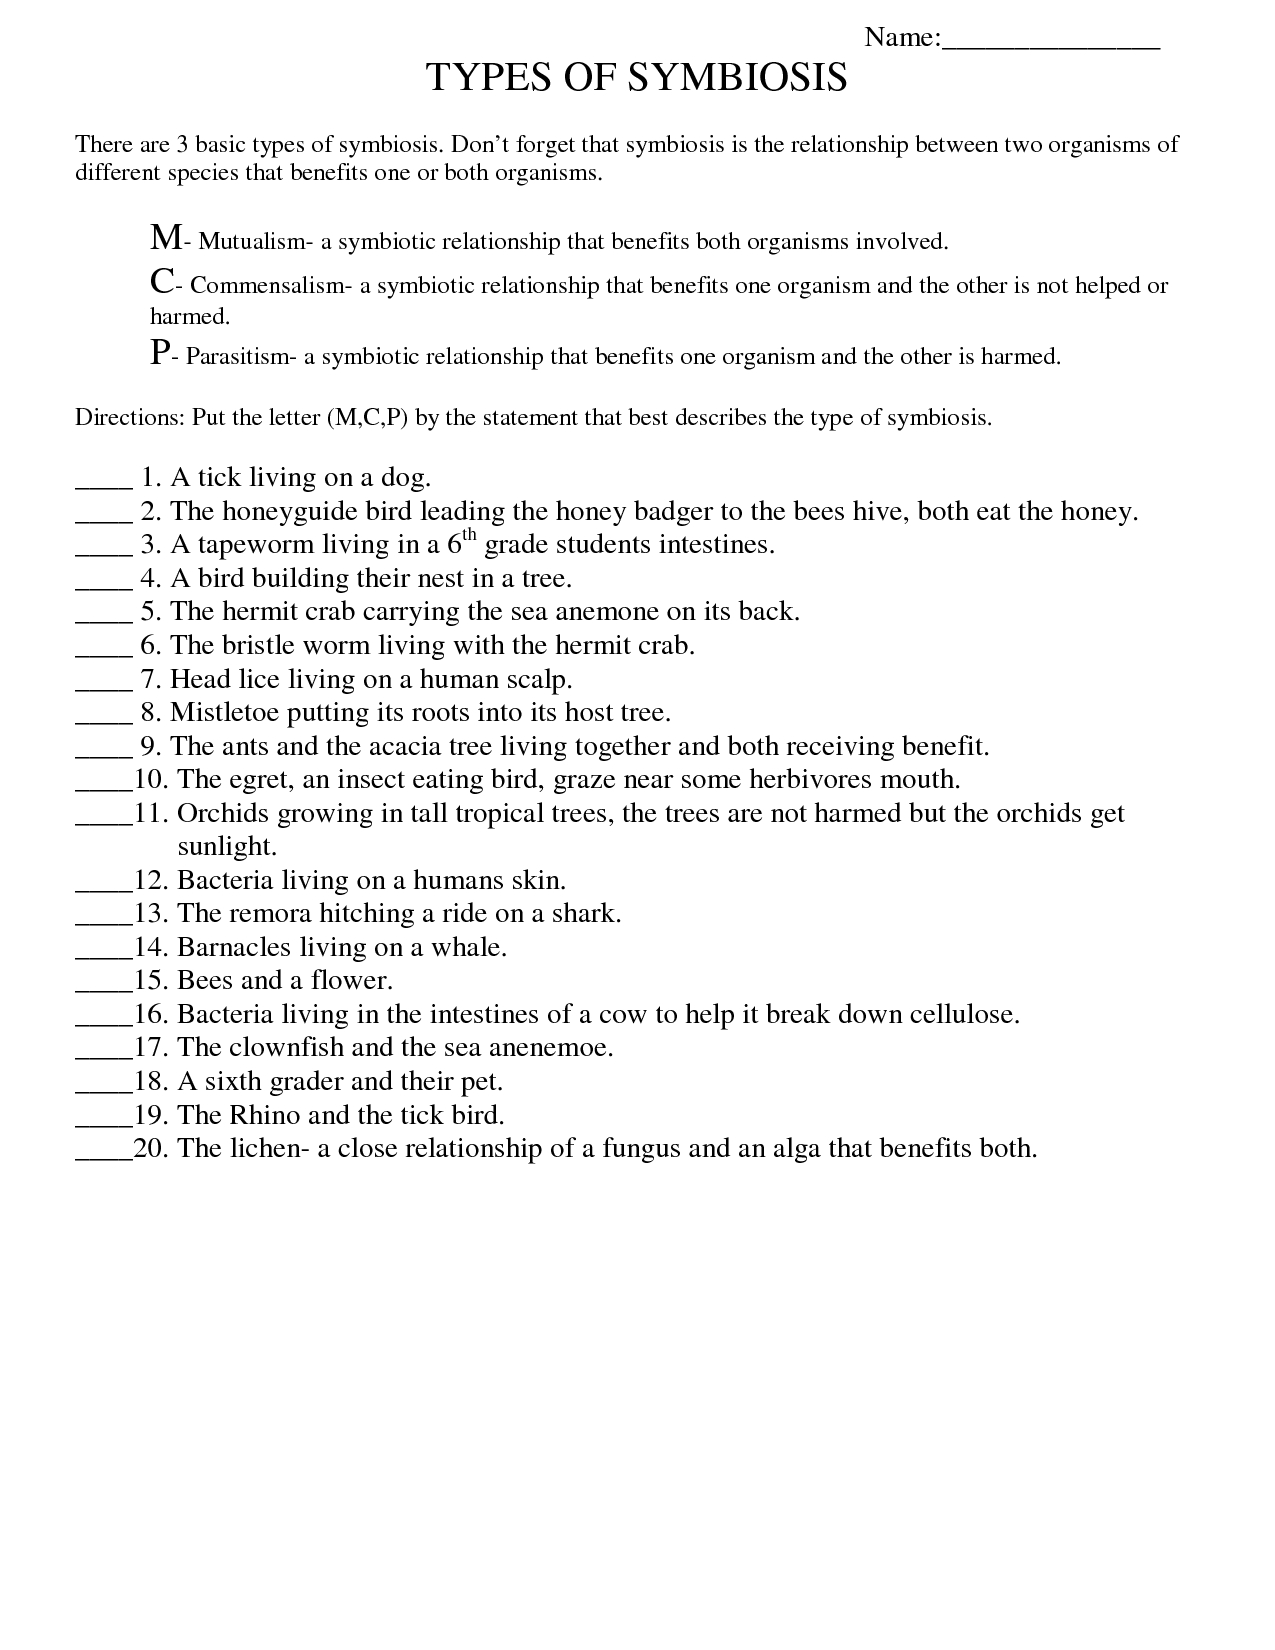 Symbiosis Worksheet: Free Printable Worksheets On High School Bio - Free Printable Worksheets For Highschool Students